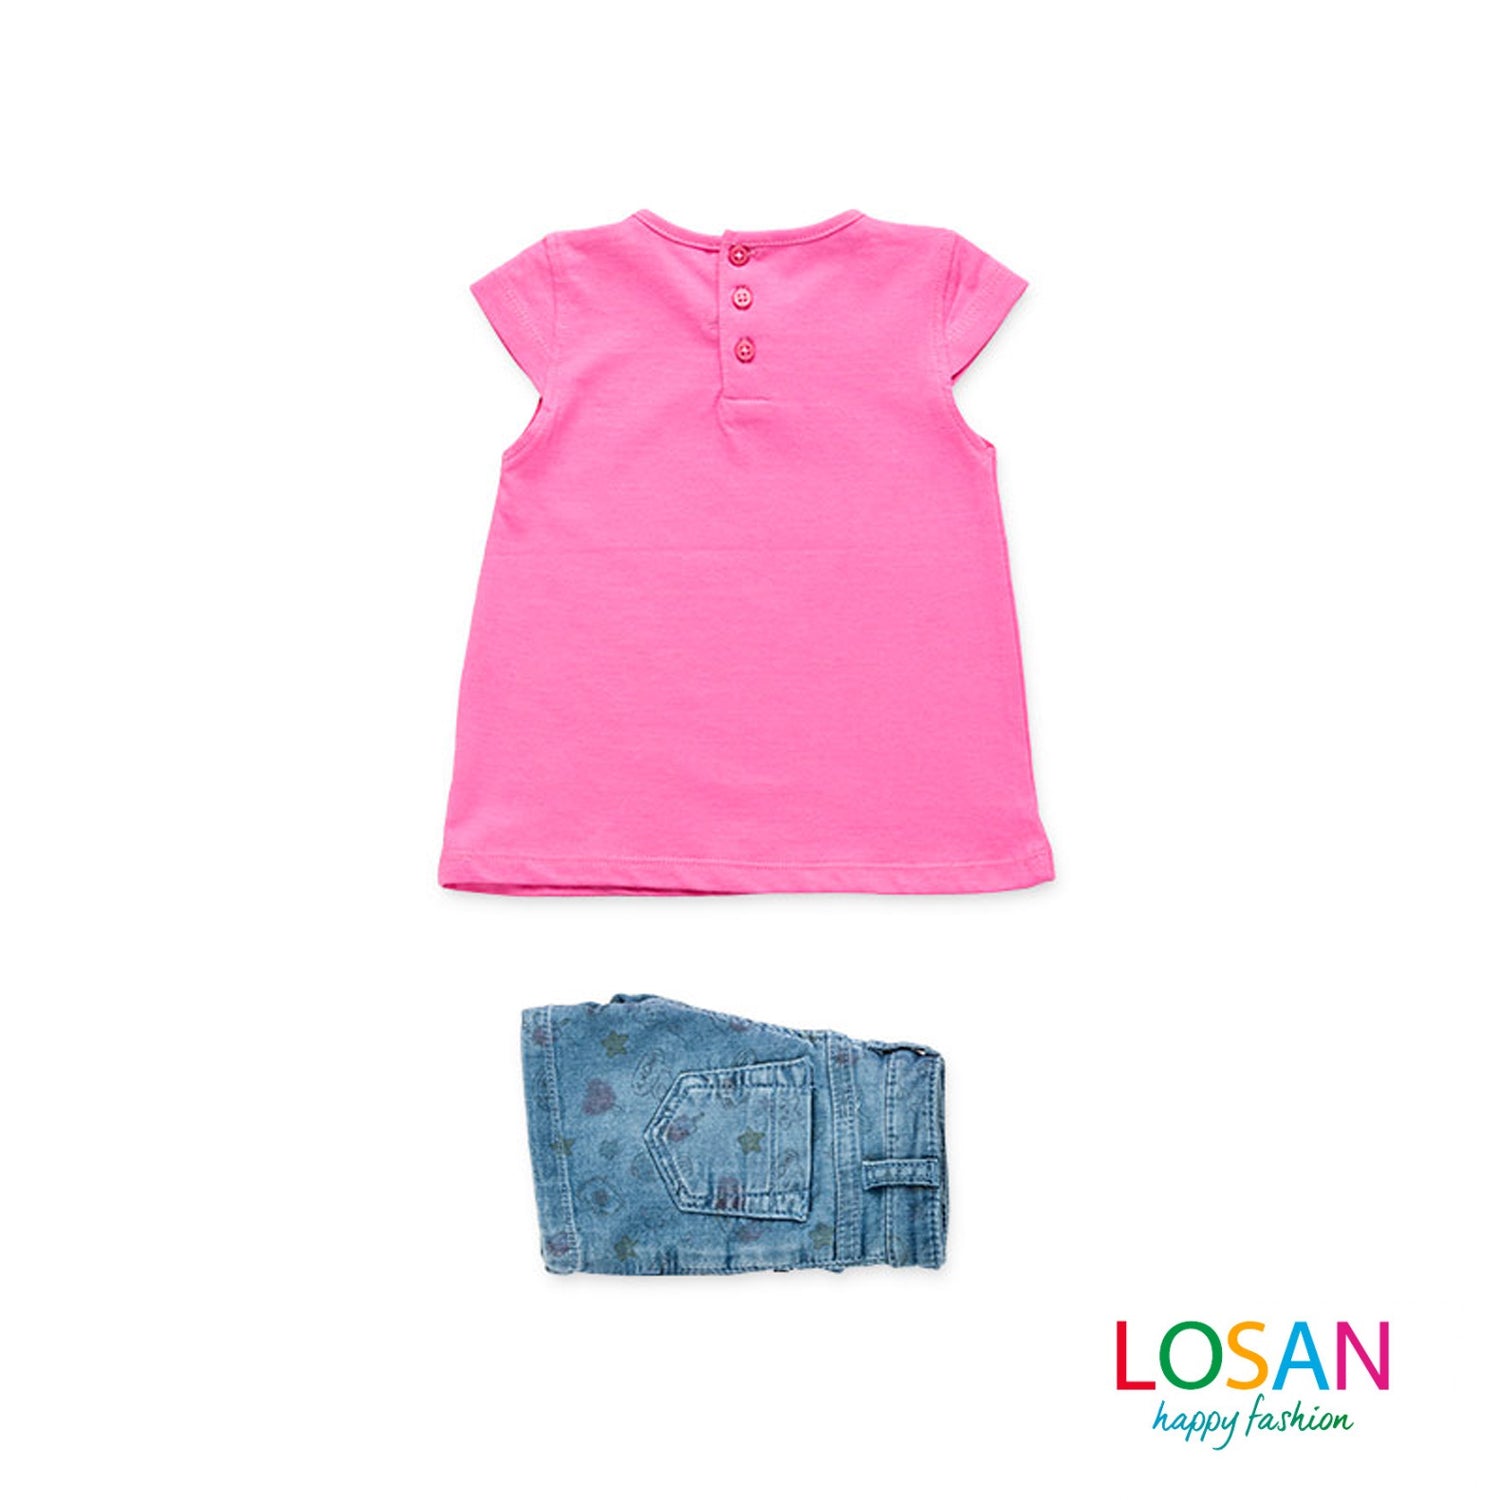 Losan - Completo Shorts + Maglietta Fucsia Baby Bambina